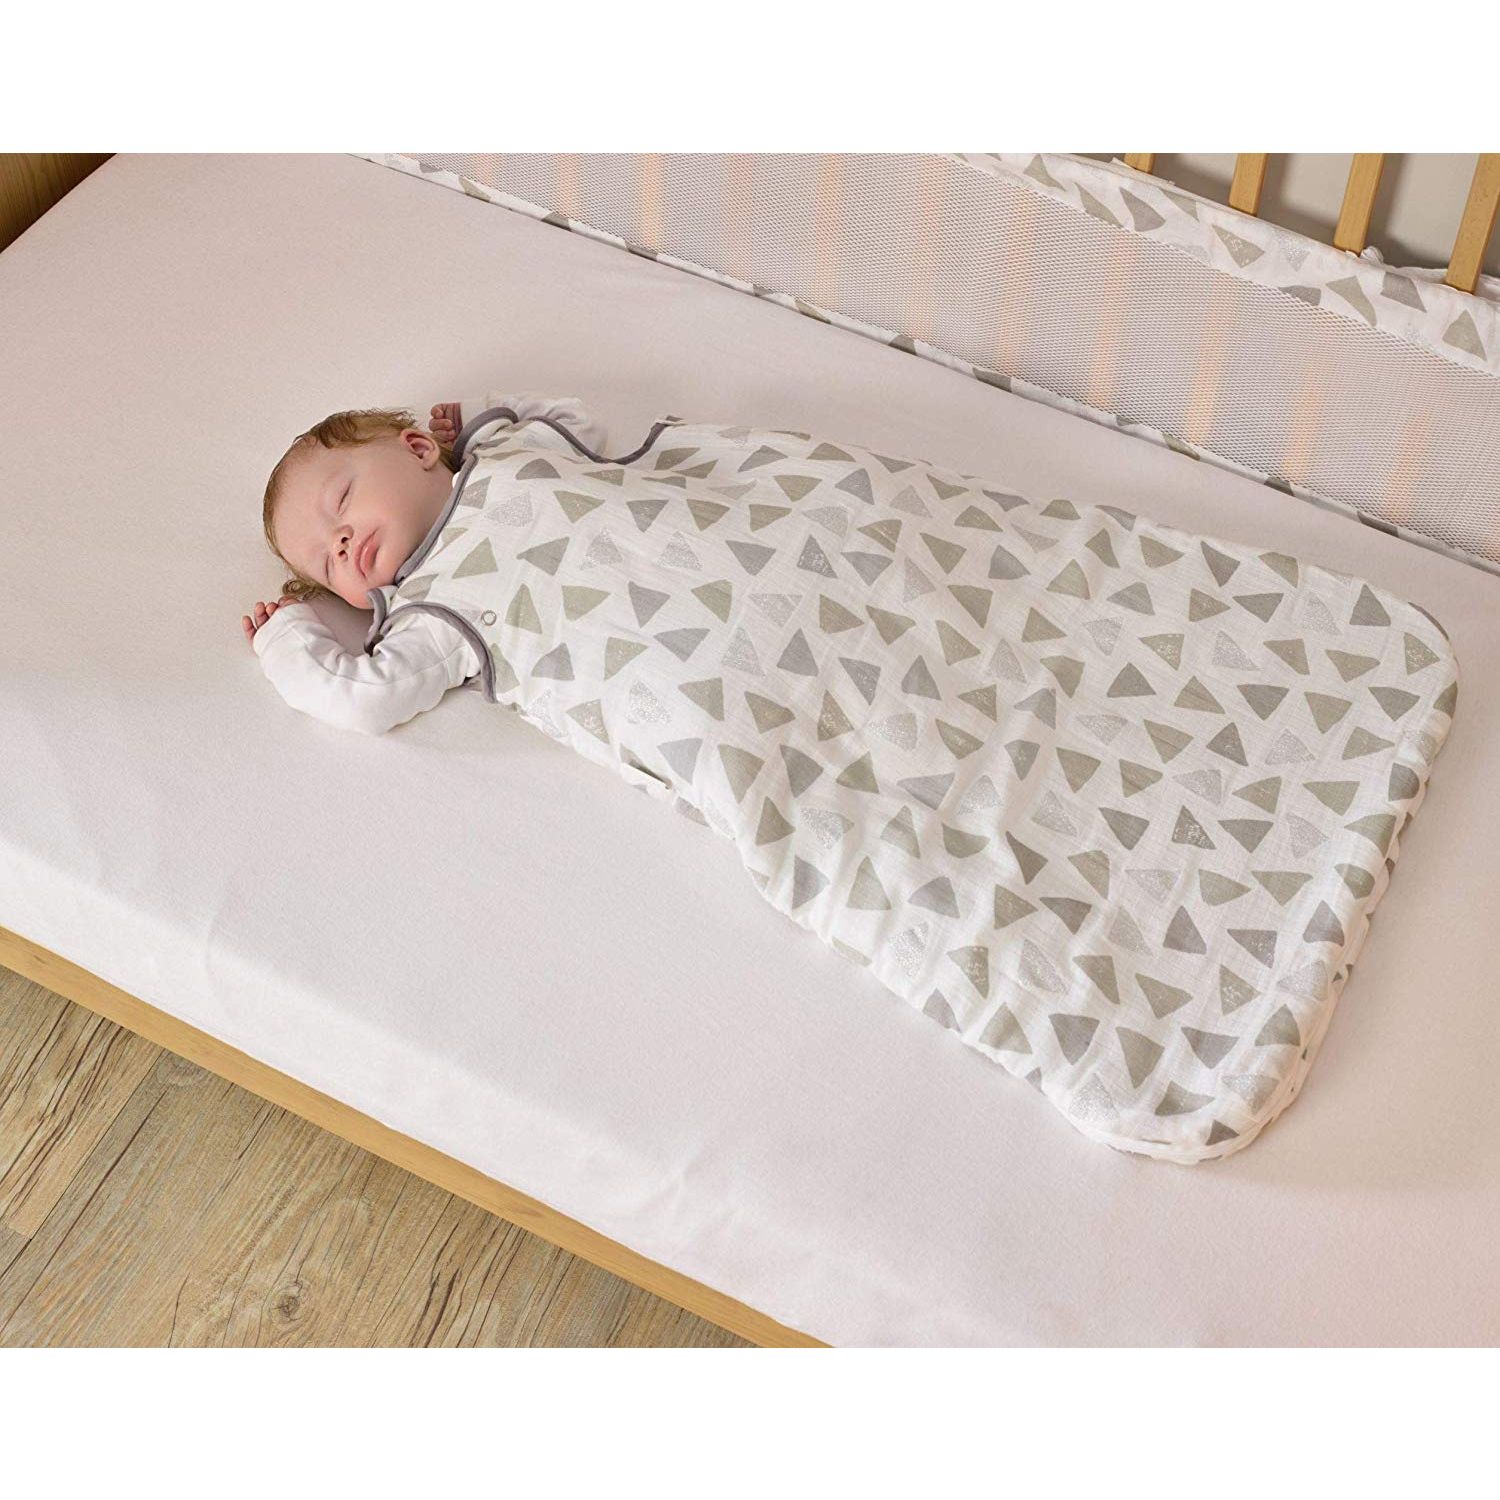 Saco de dormir Bebé Tejido Muselina - 2.5 Togs - 0 a 6 meses - Shopmami